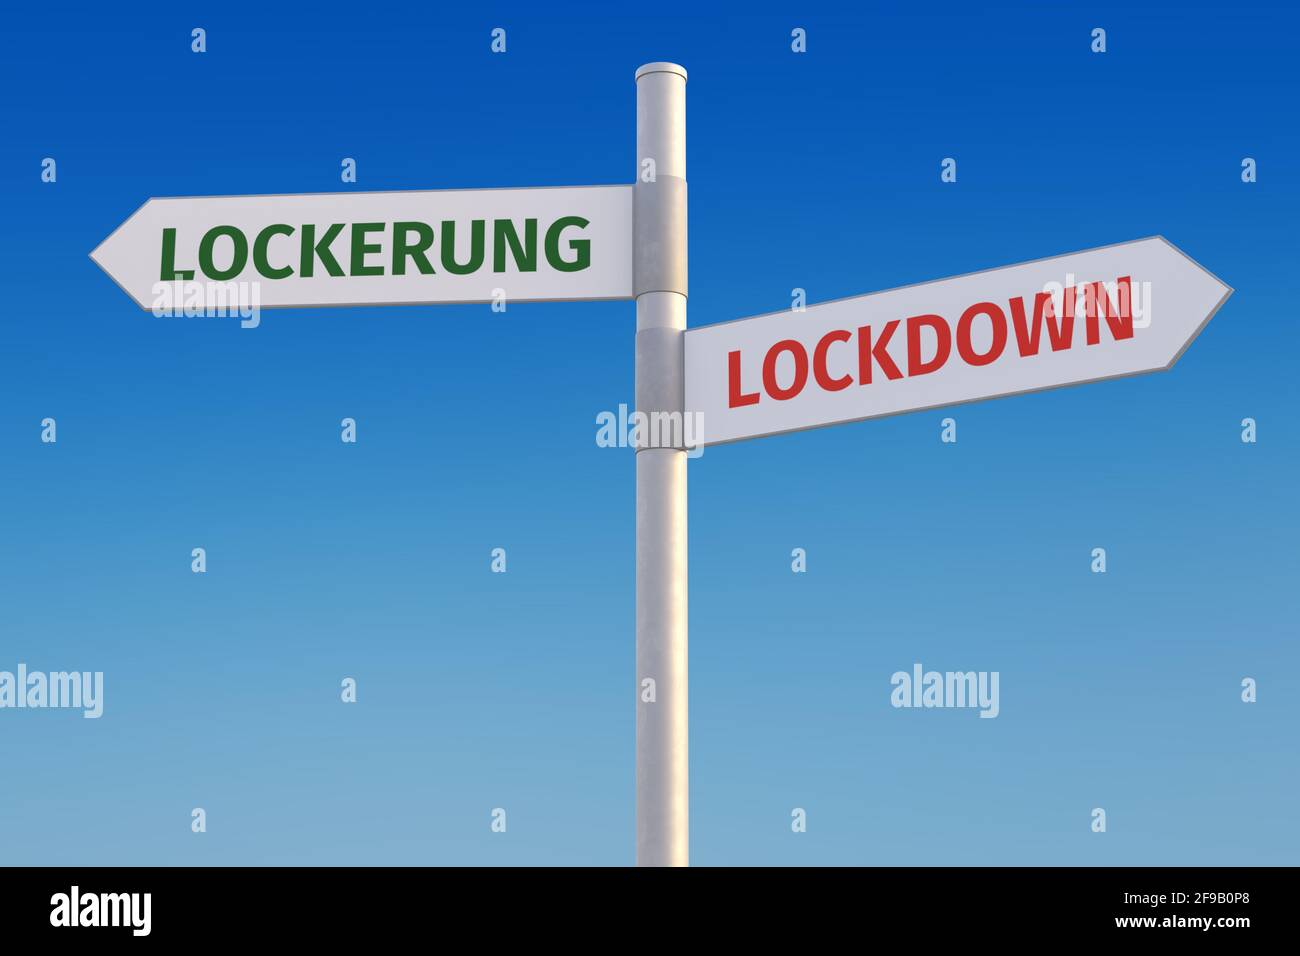 Corona Krisenkonzept: Lockdown oder Lockerung - zwei konträre Strategien, symbolisiert durch zwei Straßenschilder gegen ein Stockfoto